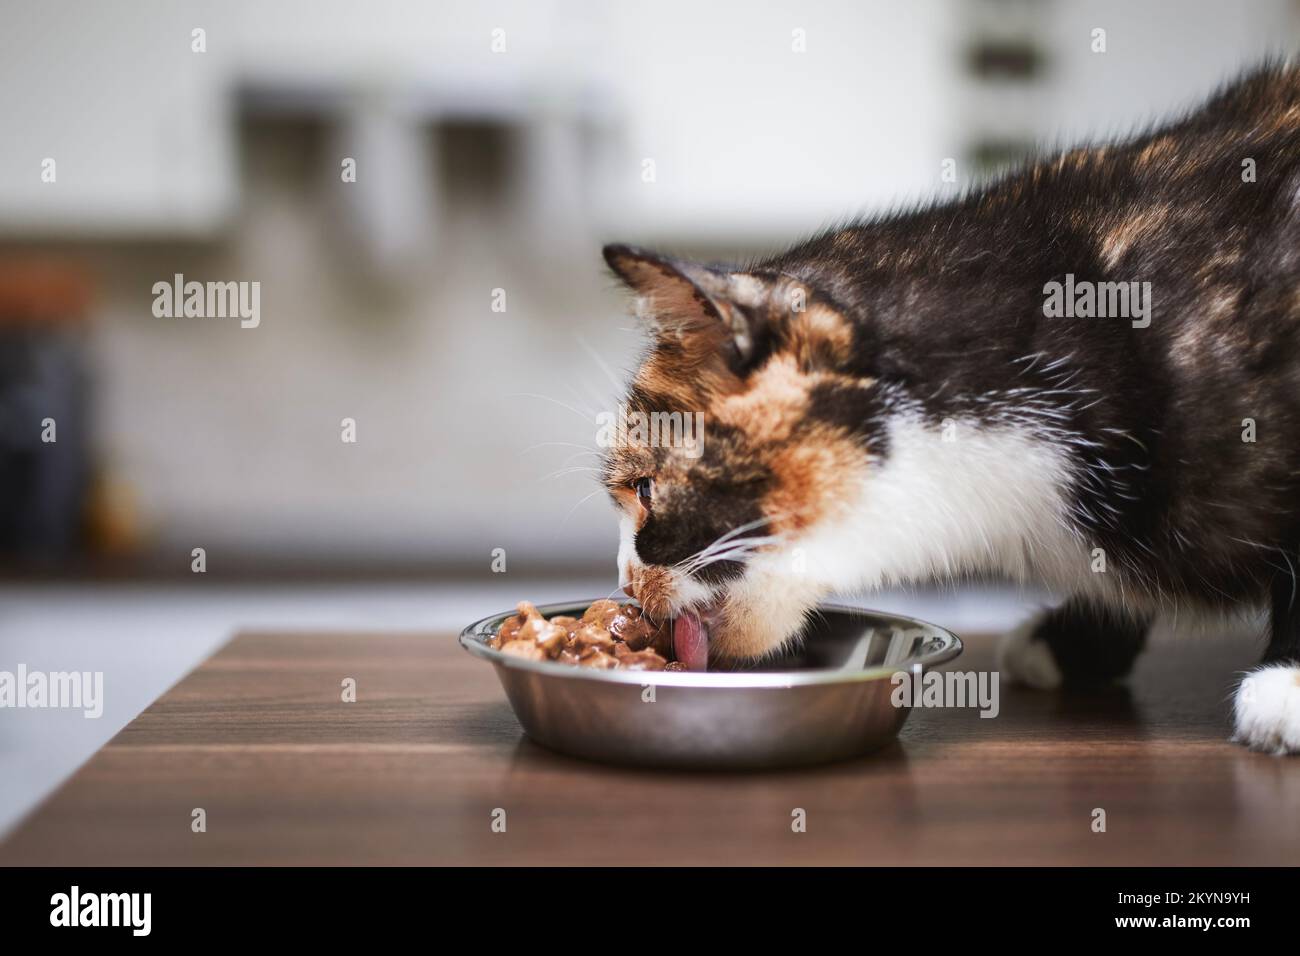 La vie domestique avec les animaux. Le chat marron mignon mange dans un bol en métal à la maison. Banque D'Images